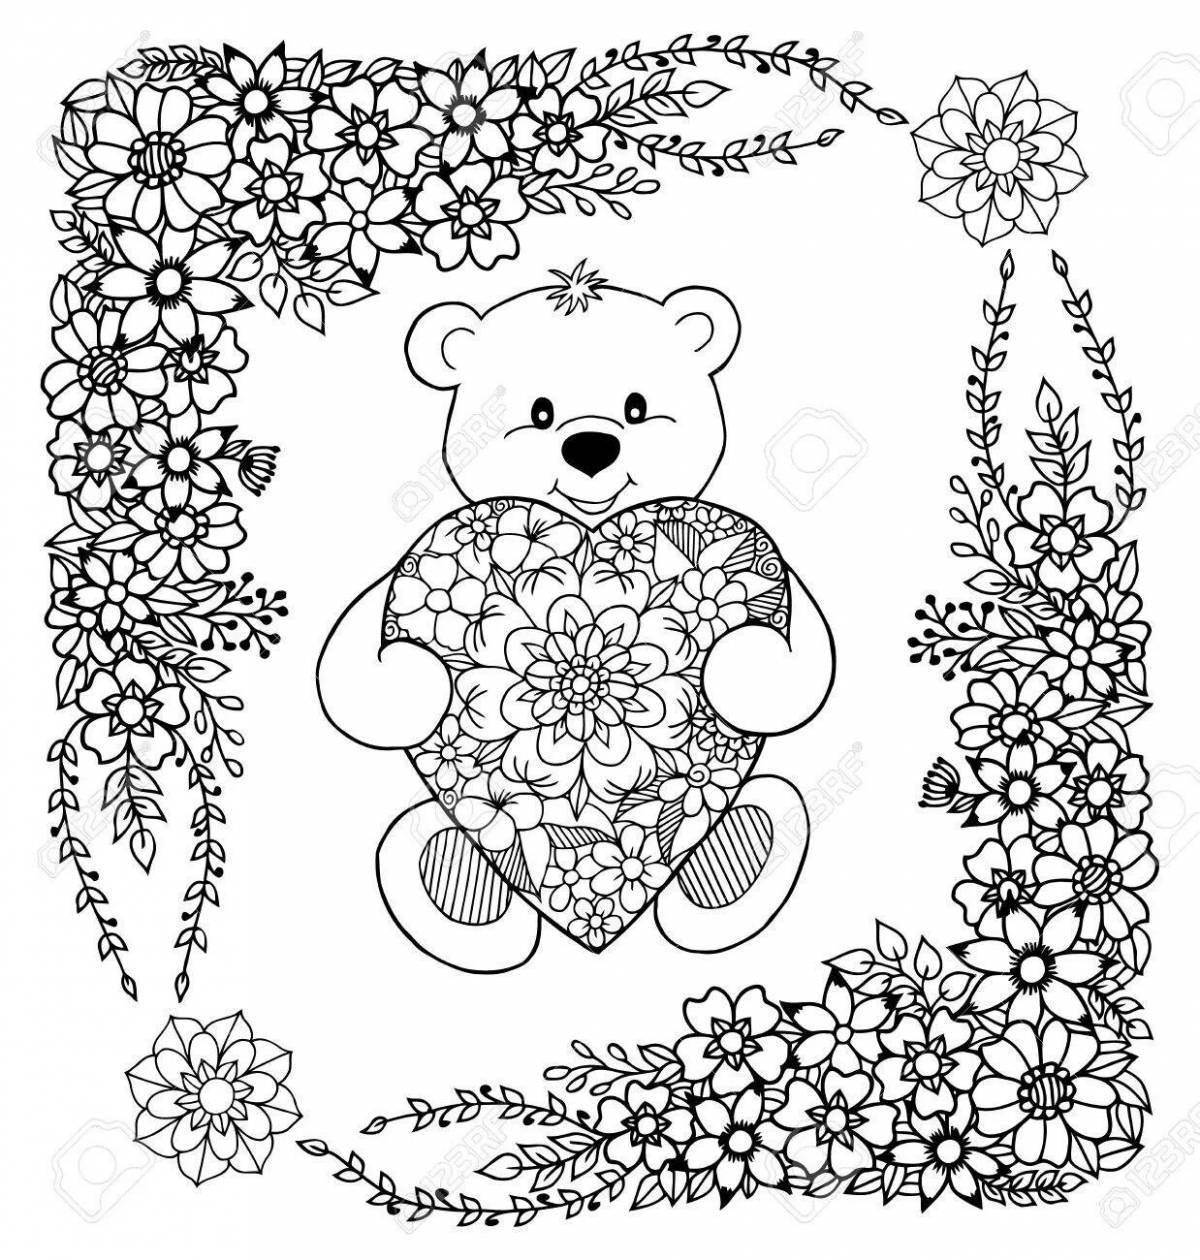 Joyful anti-stress coloring bear